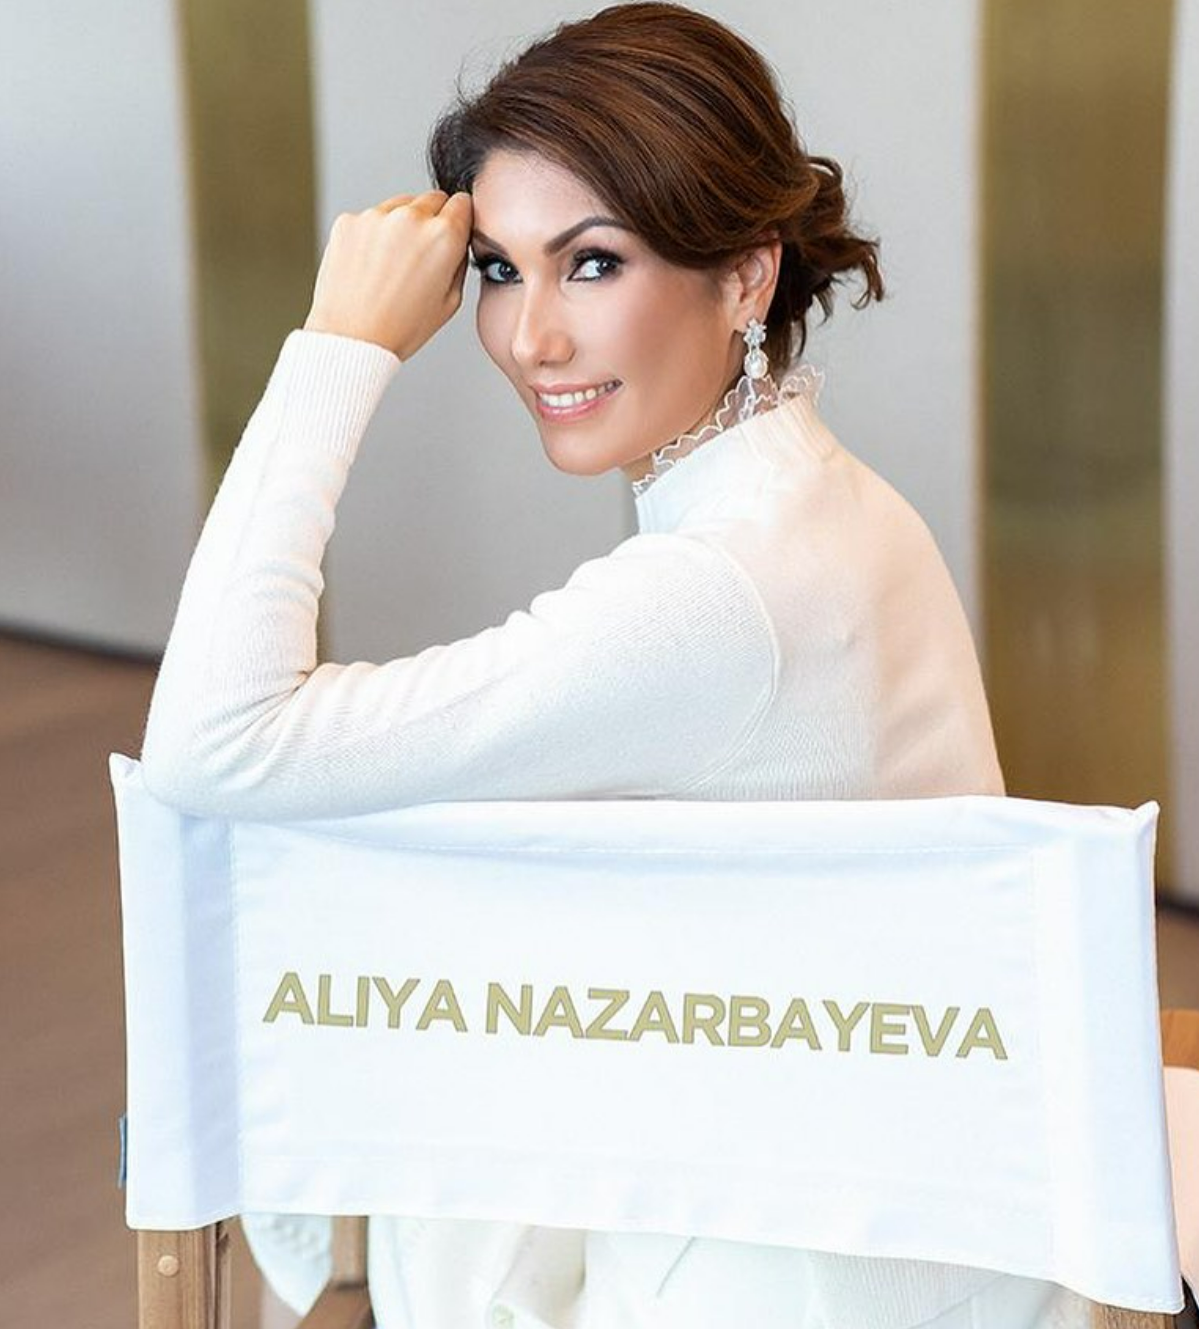 علياء نزارباييف ابنة الرئيس السابق نور سلطان نزارباييف (من صفحتها على انستغرام)